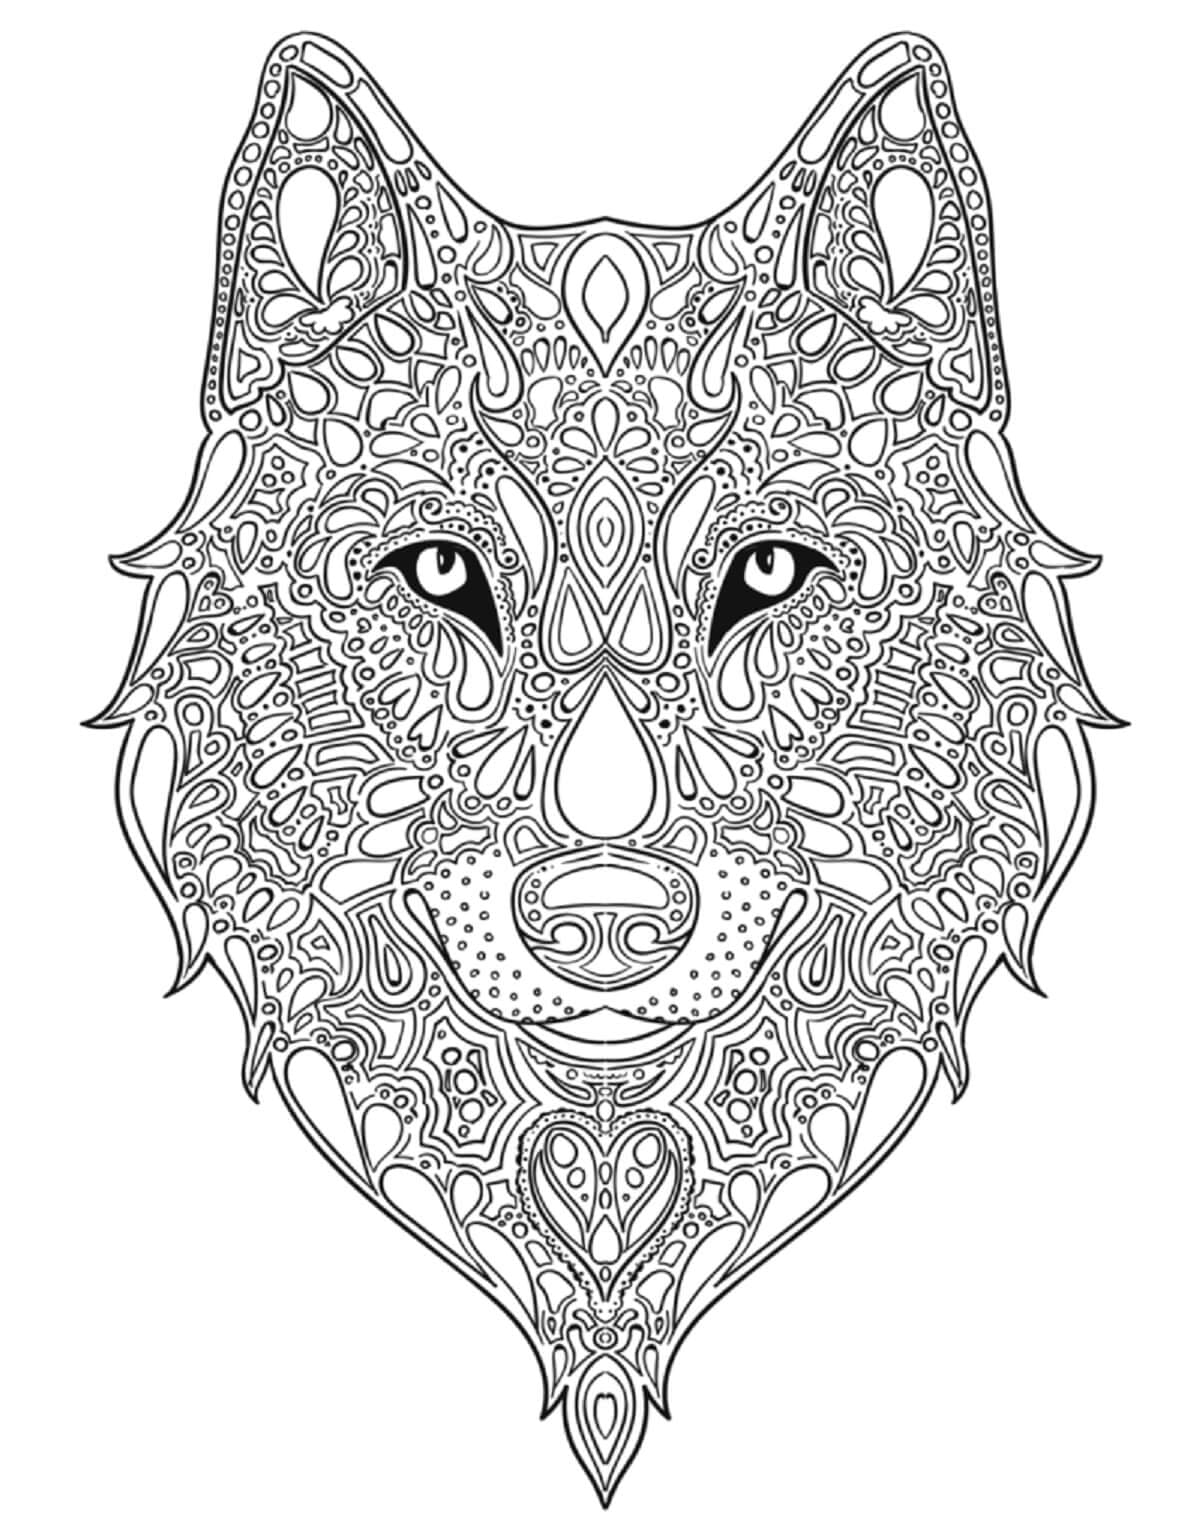 Mandala de Loup Pour Adultes coloring page